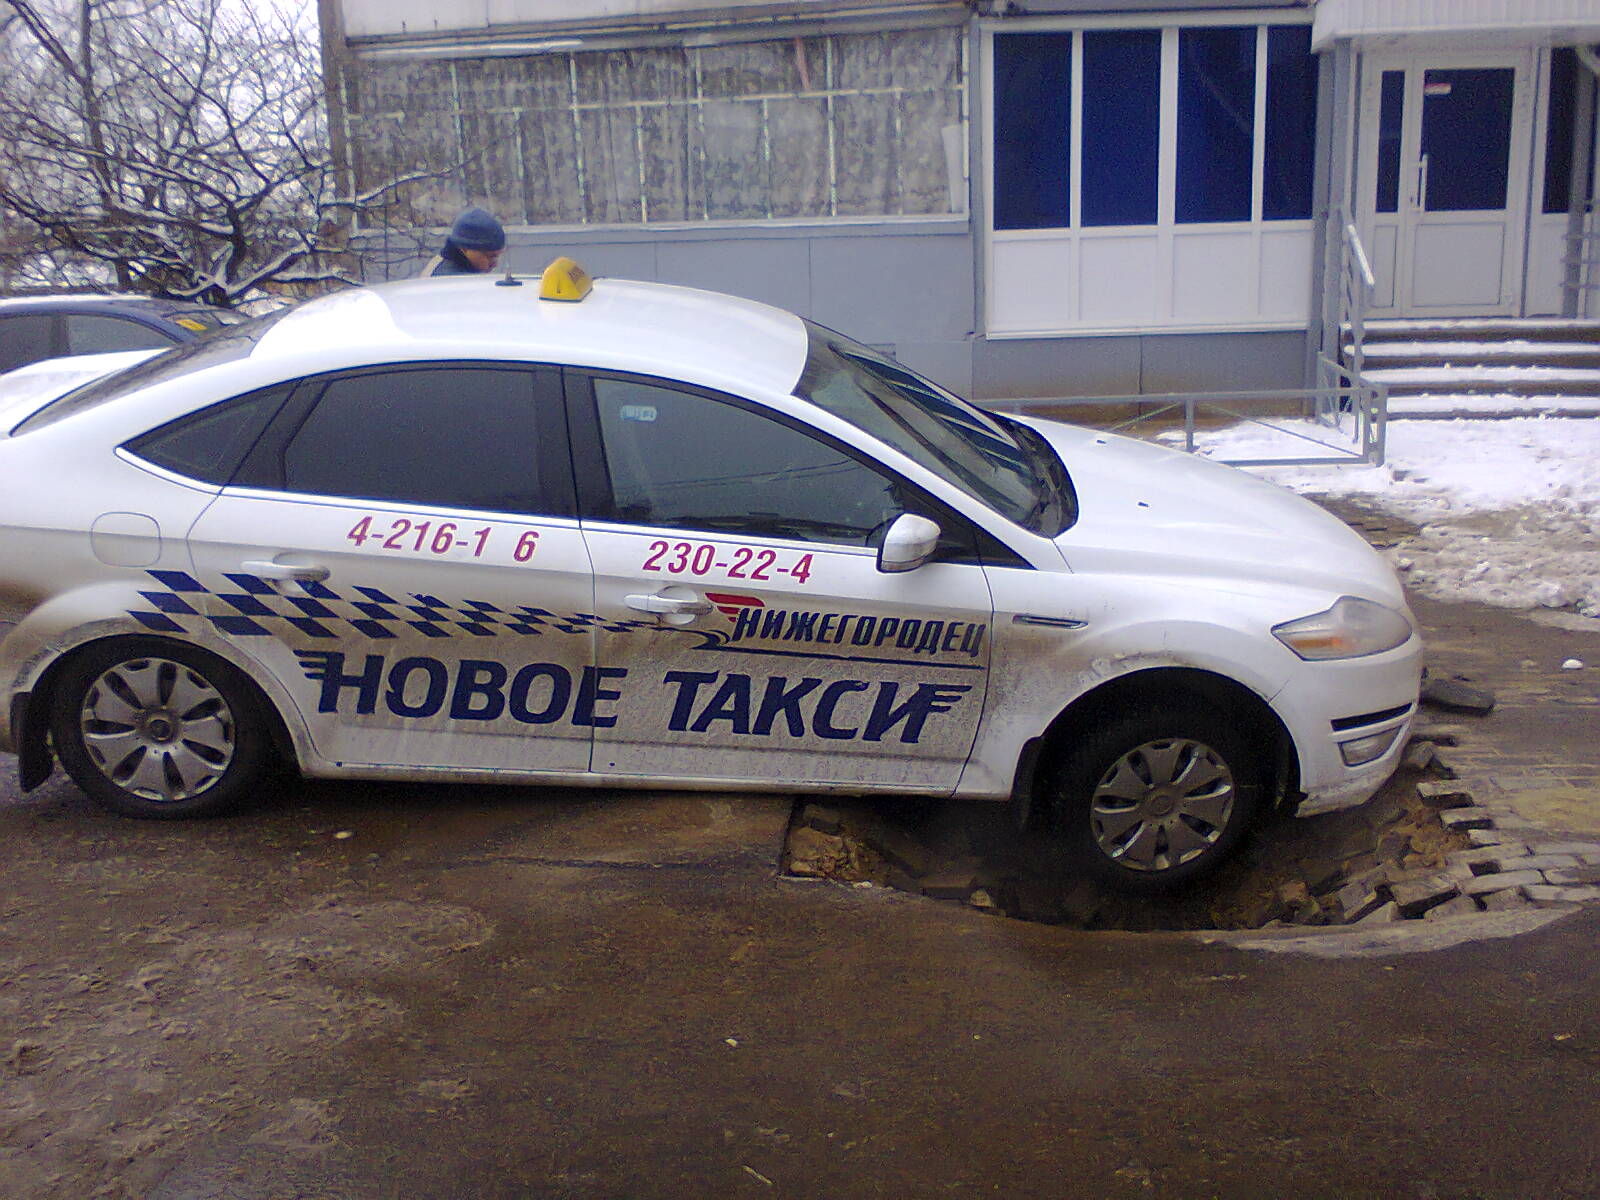 Такси в великом новгороде телефоны. Таксопарк Нижегородец. Новое такси. Такси Нижегородец в Нижнем Новгороде.